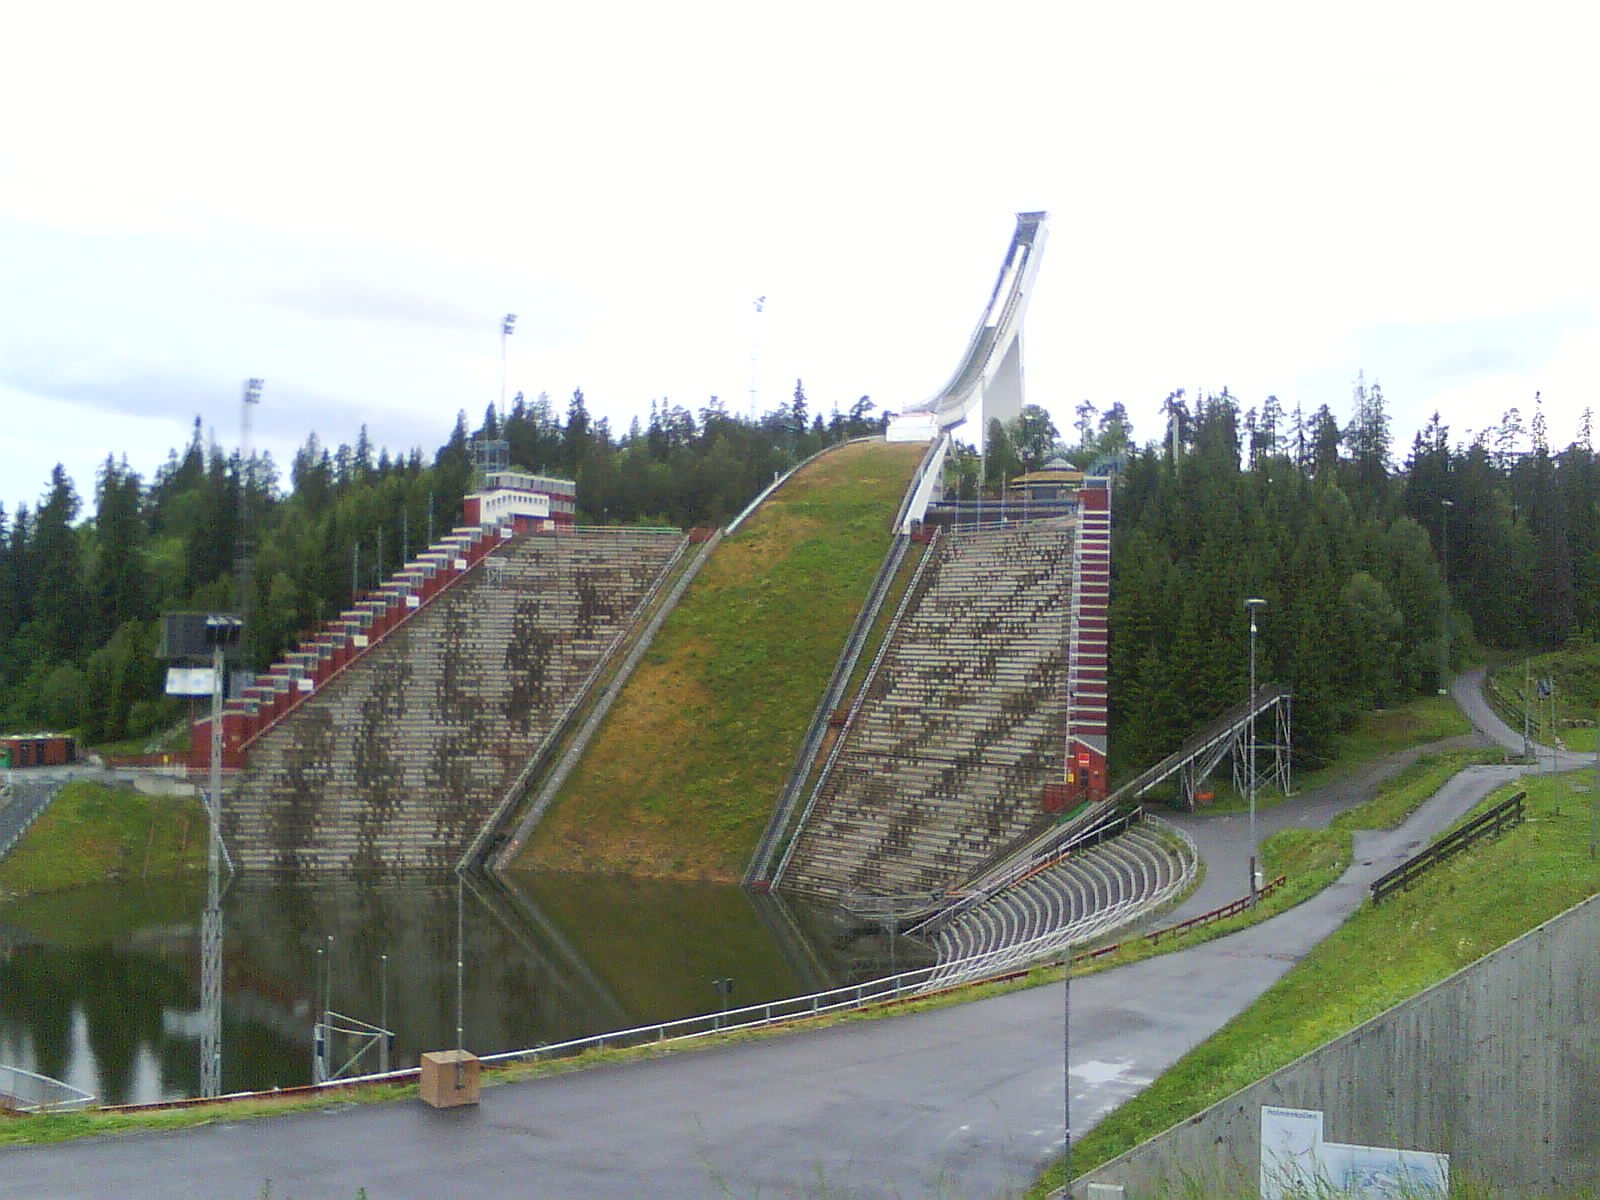 Homenkollen ski jump in Norway